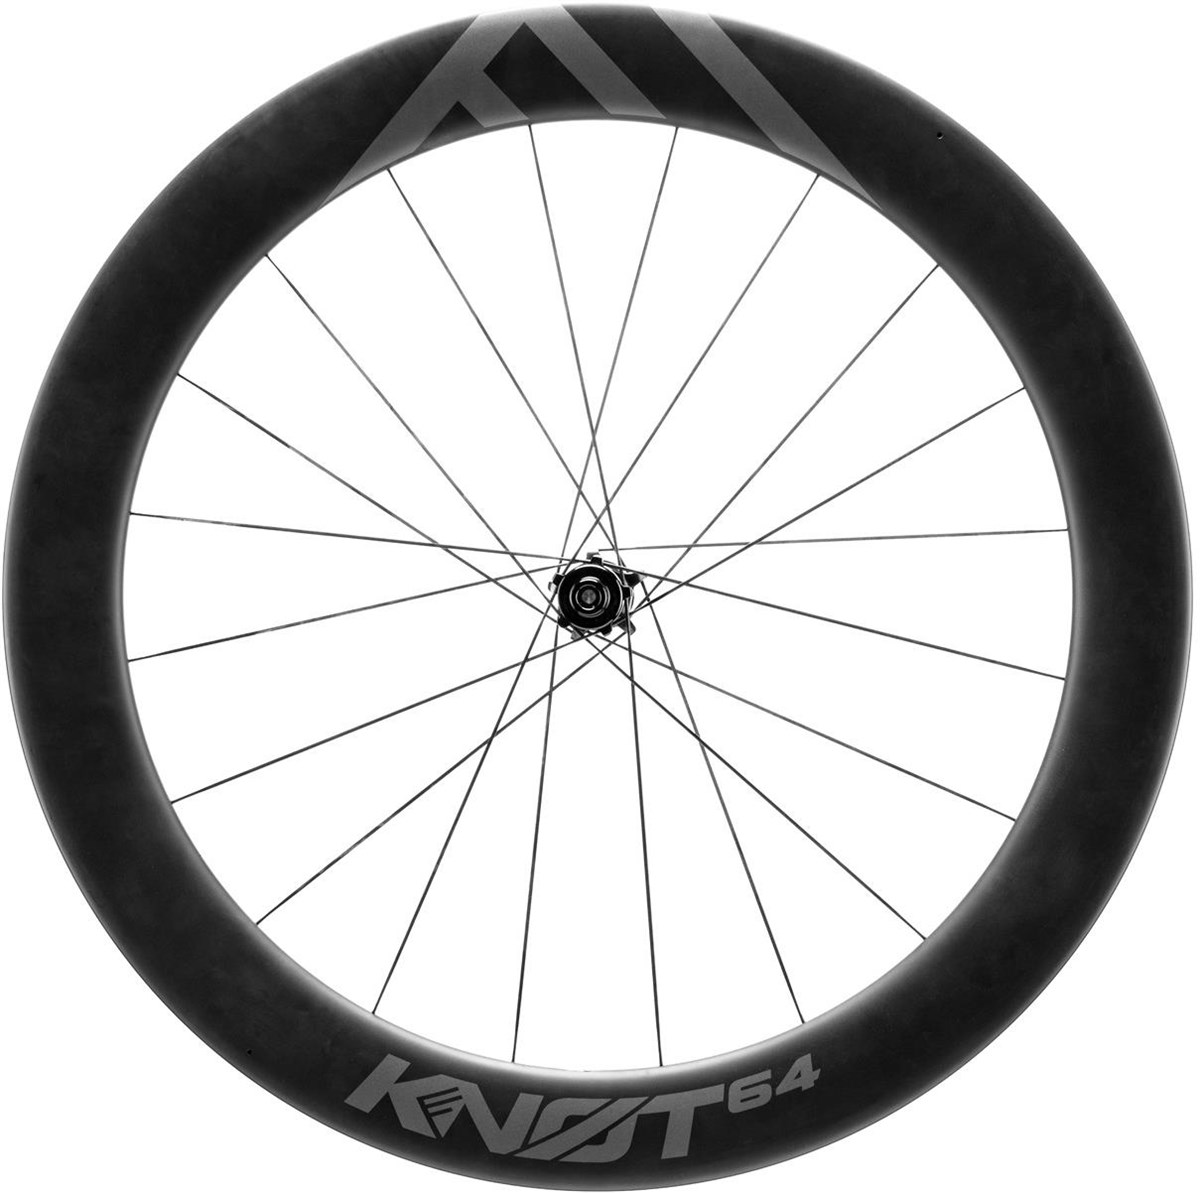 Cannondale KNØT 64 Disc Carbon Front Wheel product image